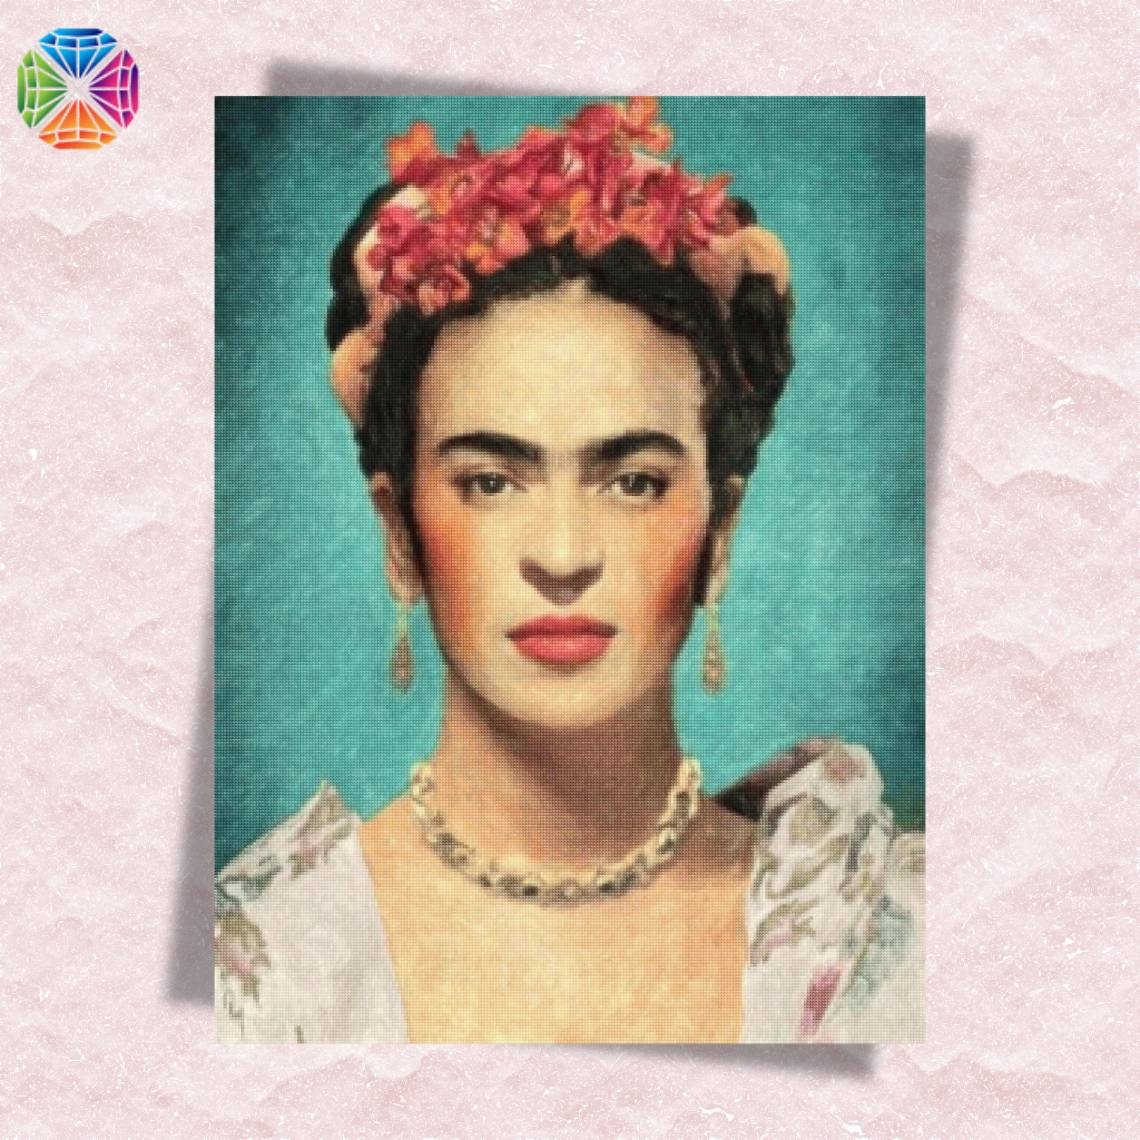 Frida Kahlo Self Portrait - Diamond Painting